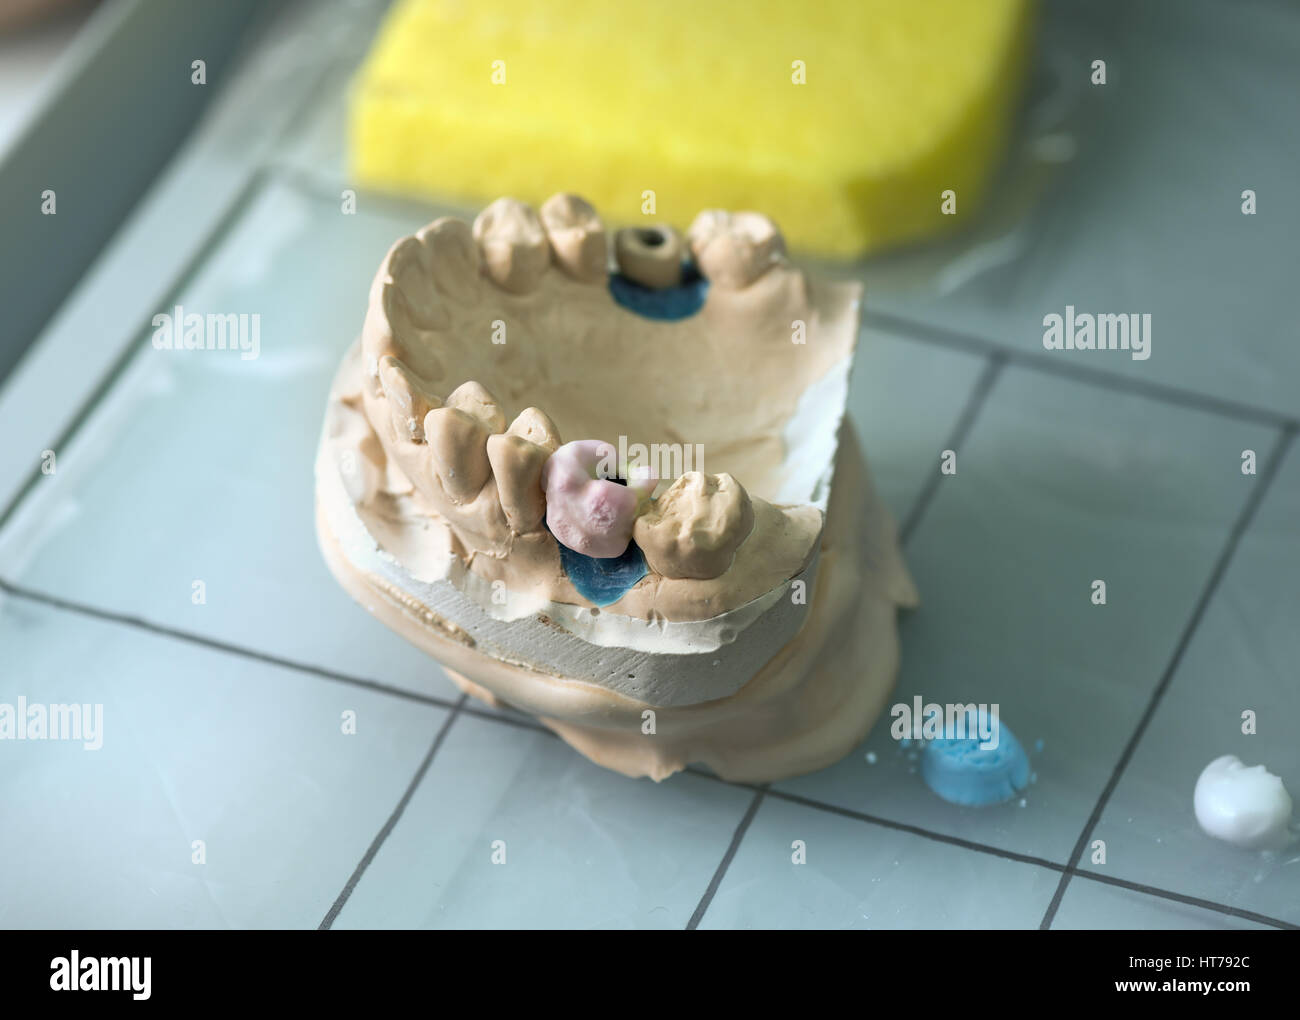 Protesi dentale, dente artificiale di protesi, mani lavorando sulla dentiera, denti finti. Foto Stock